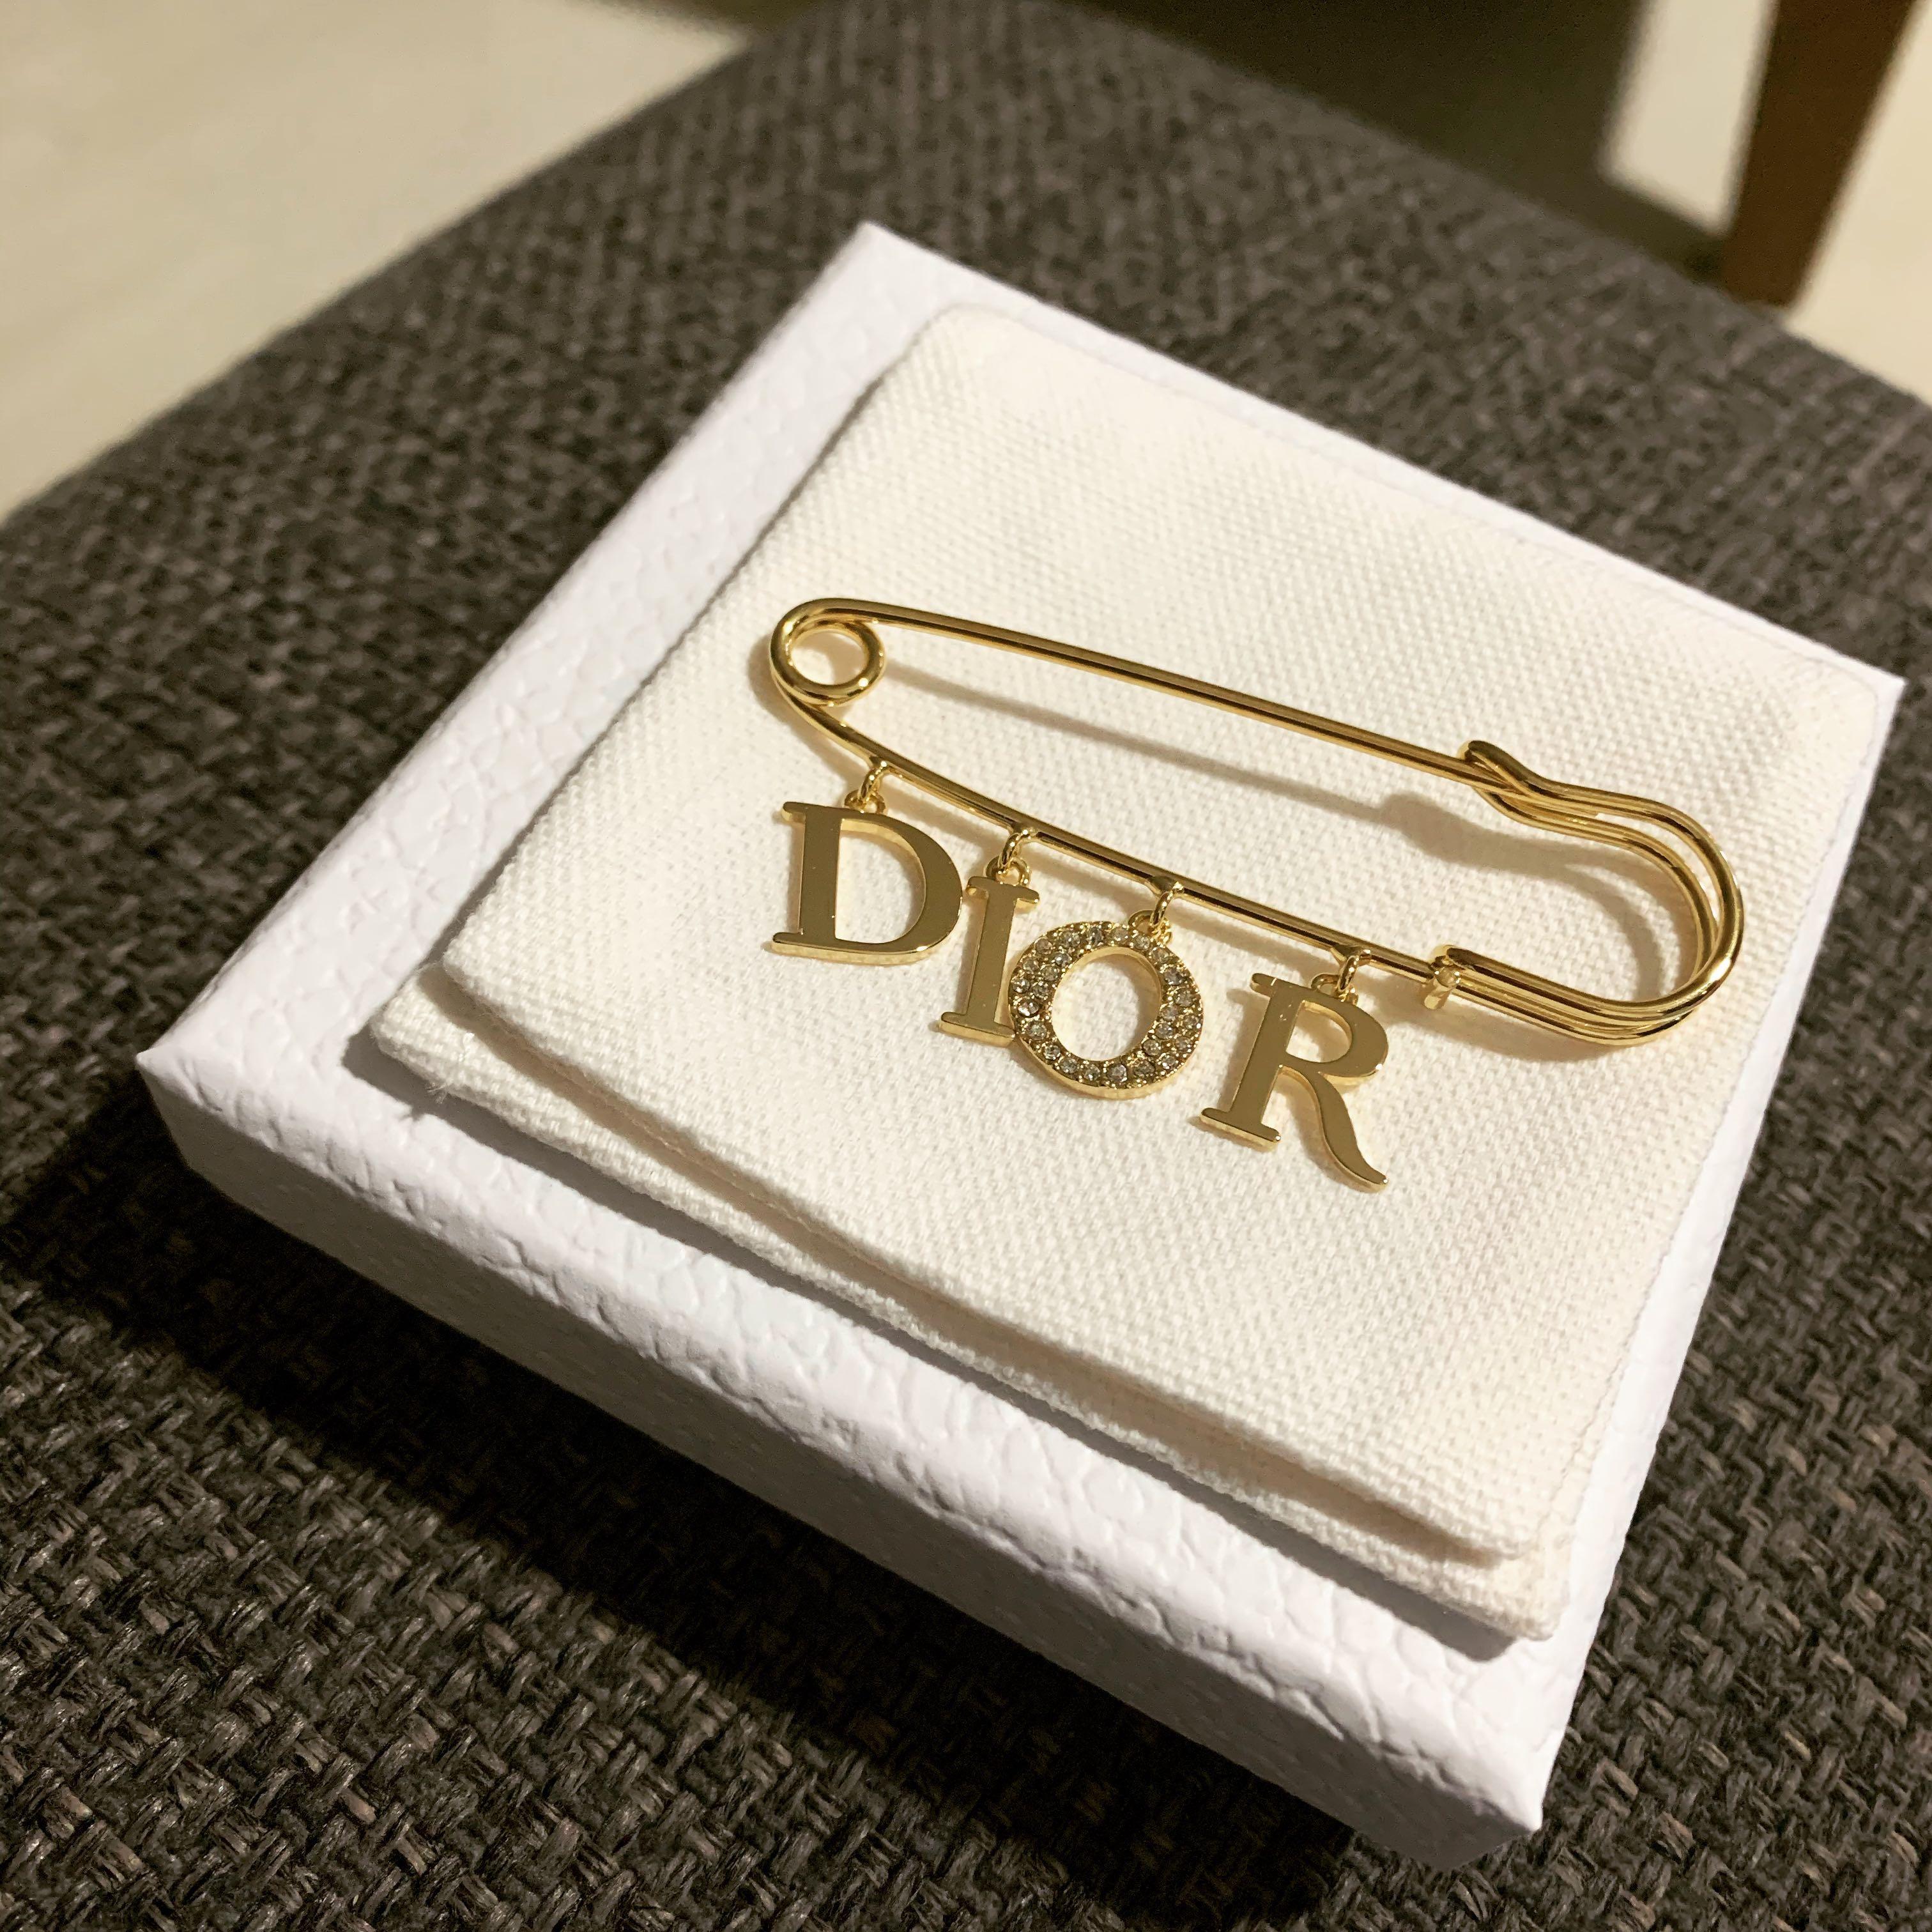 BNIB Christian Dior Safety Pin Brooch 